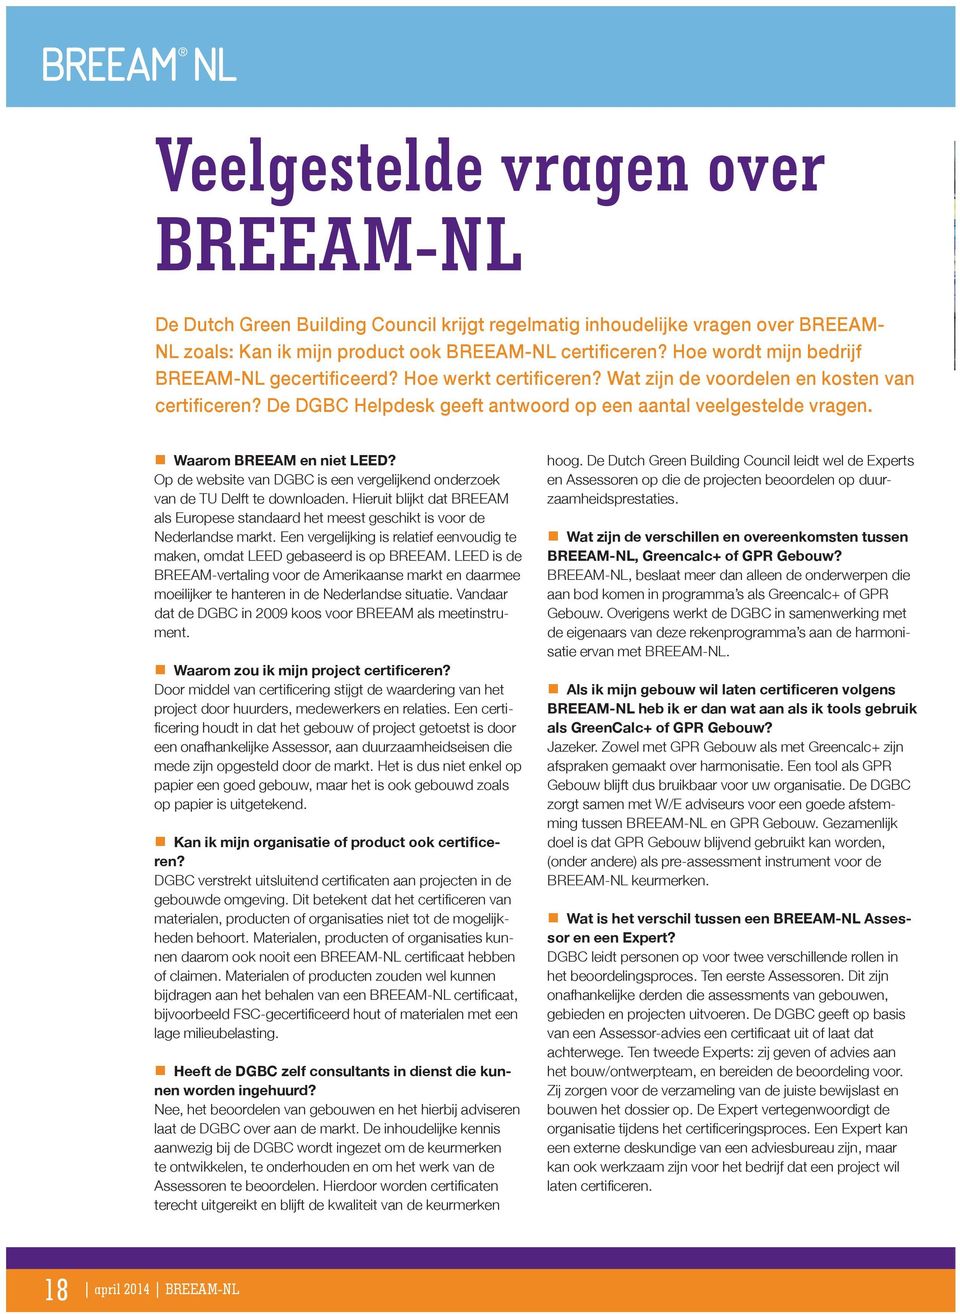 Een vergelijking is relatief eenvoudig te maken, omdat LEED gebaseerd is op BREEAM. LEED is de BREEAM-vertaling voor de Amerikaanse markt en daarmee moeilijker te hanteren in de Nederlandse situatie.